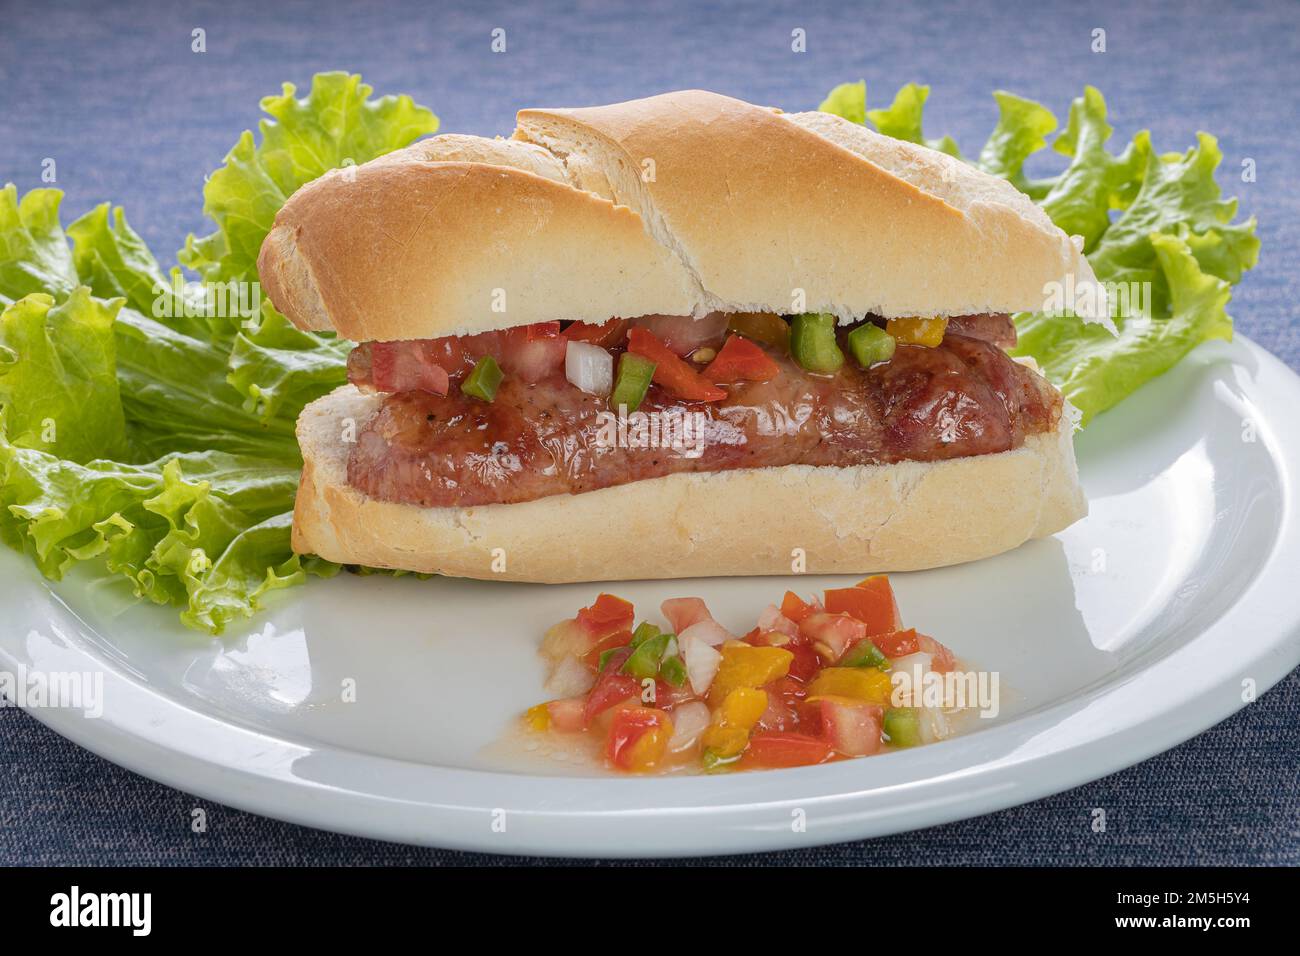 Choripan argentino é eleito melhor hot dog por site de gastronomia